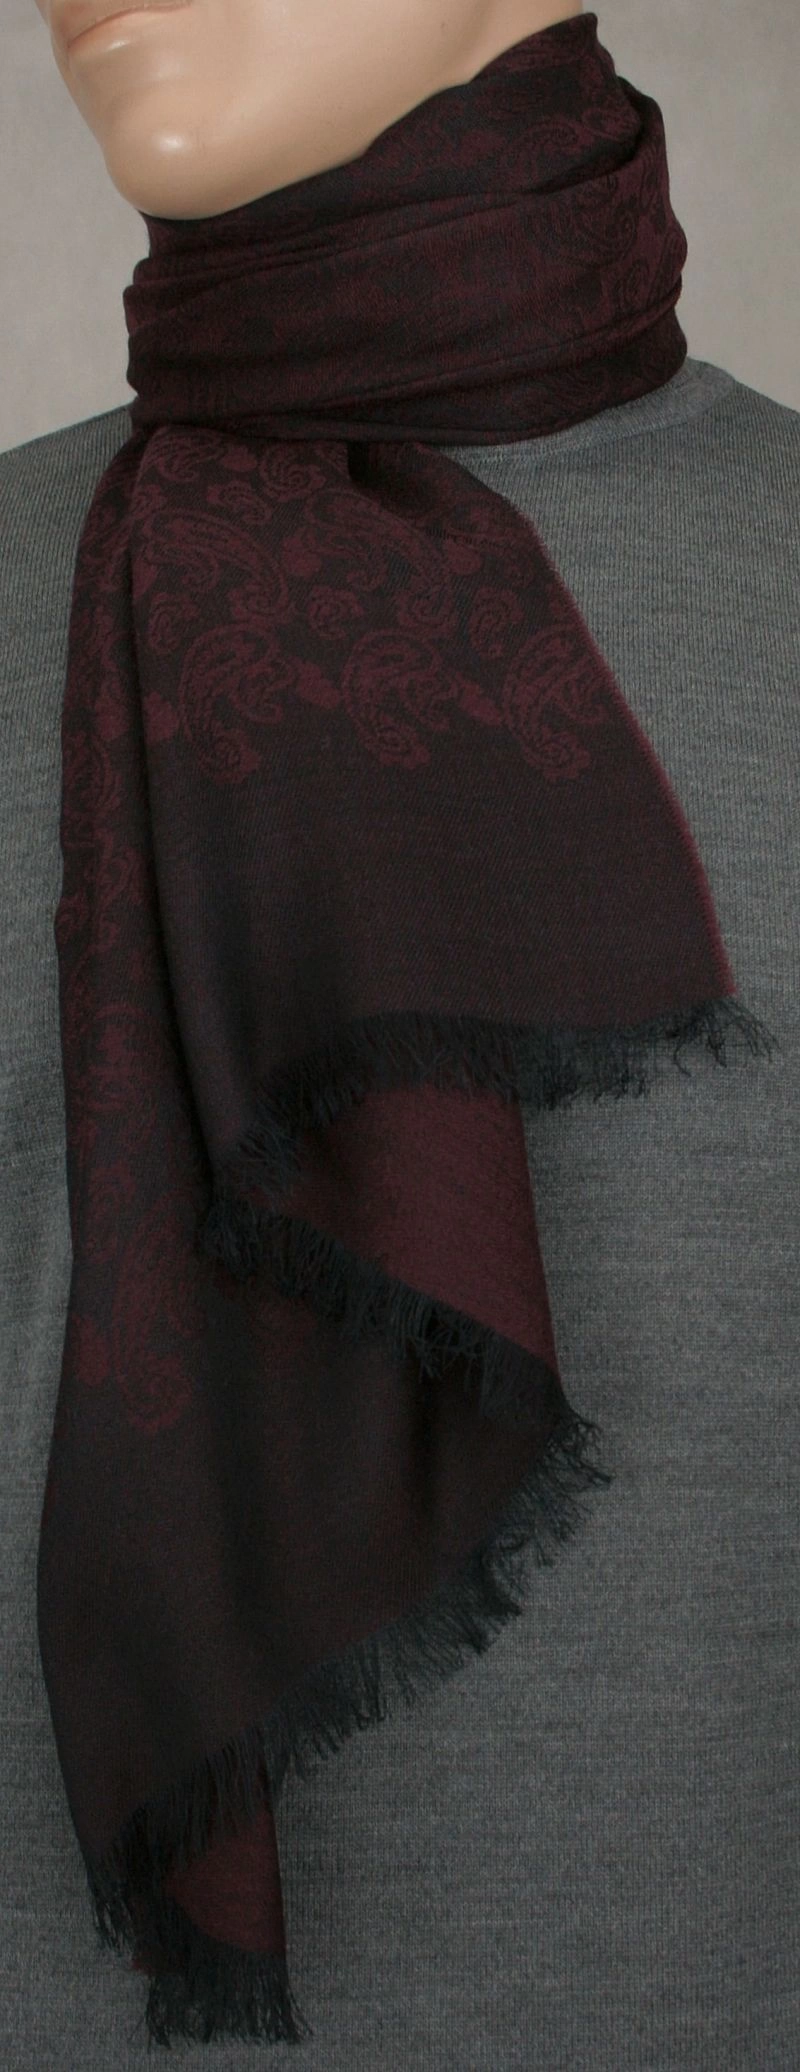 Elegancki szal - wełna z wiskozą - bordo, wzór paisley